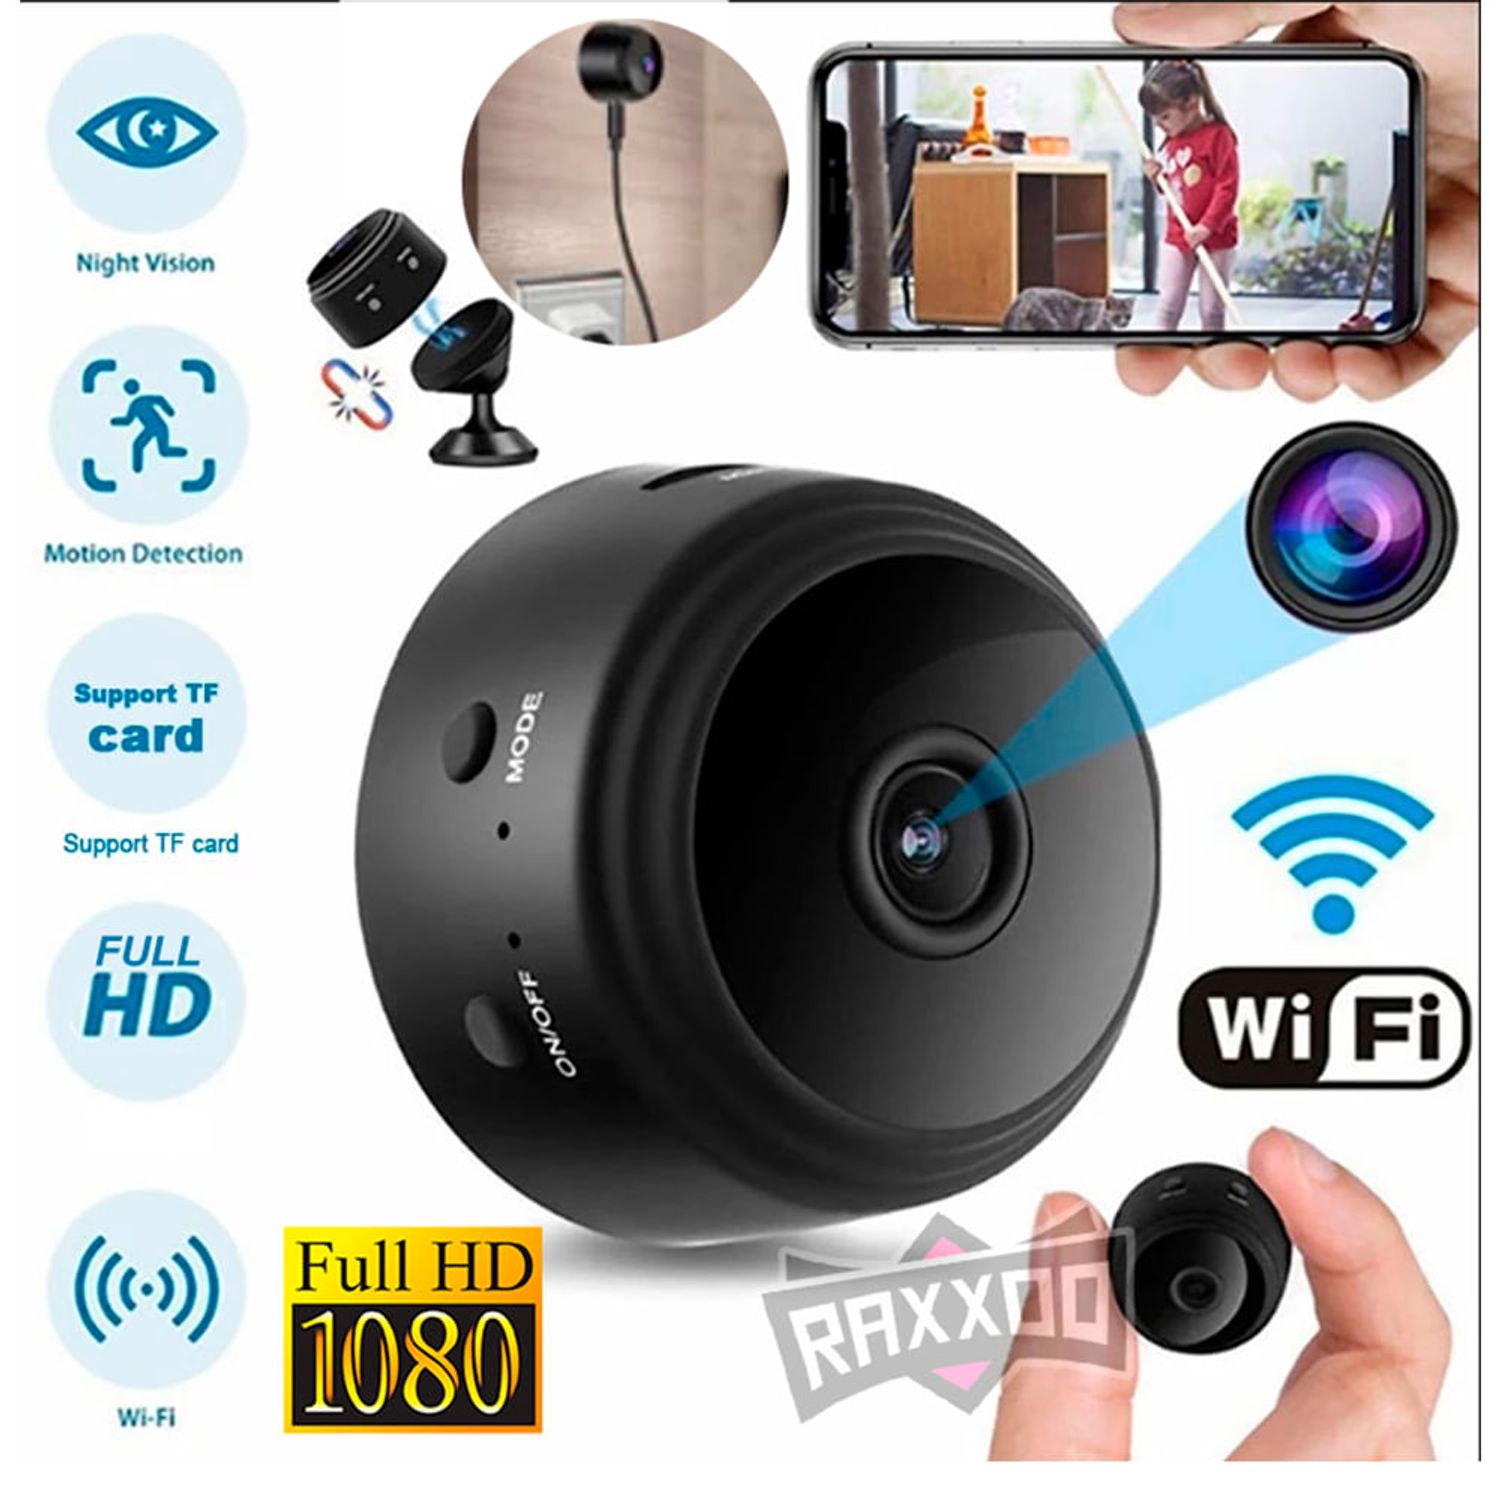 Comprar mini cámara espía con infrarrojos - Precio y descuentos online